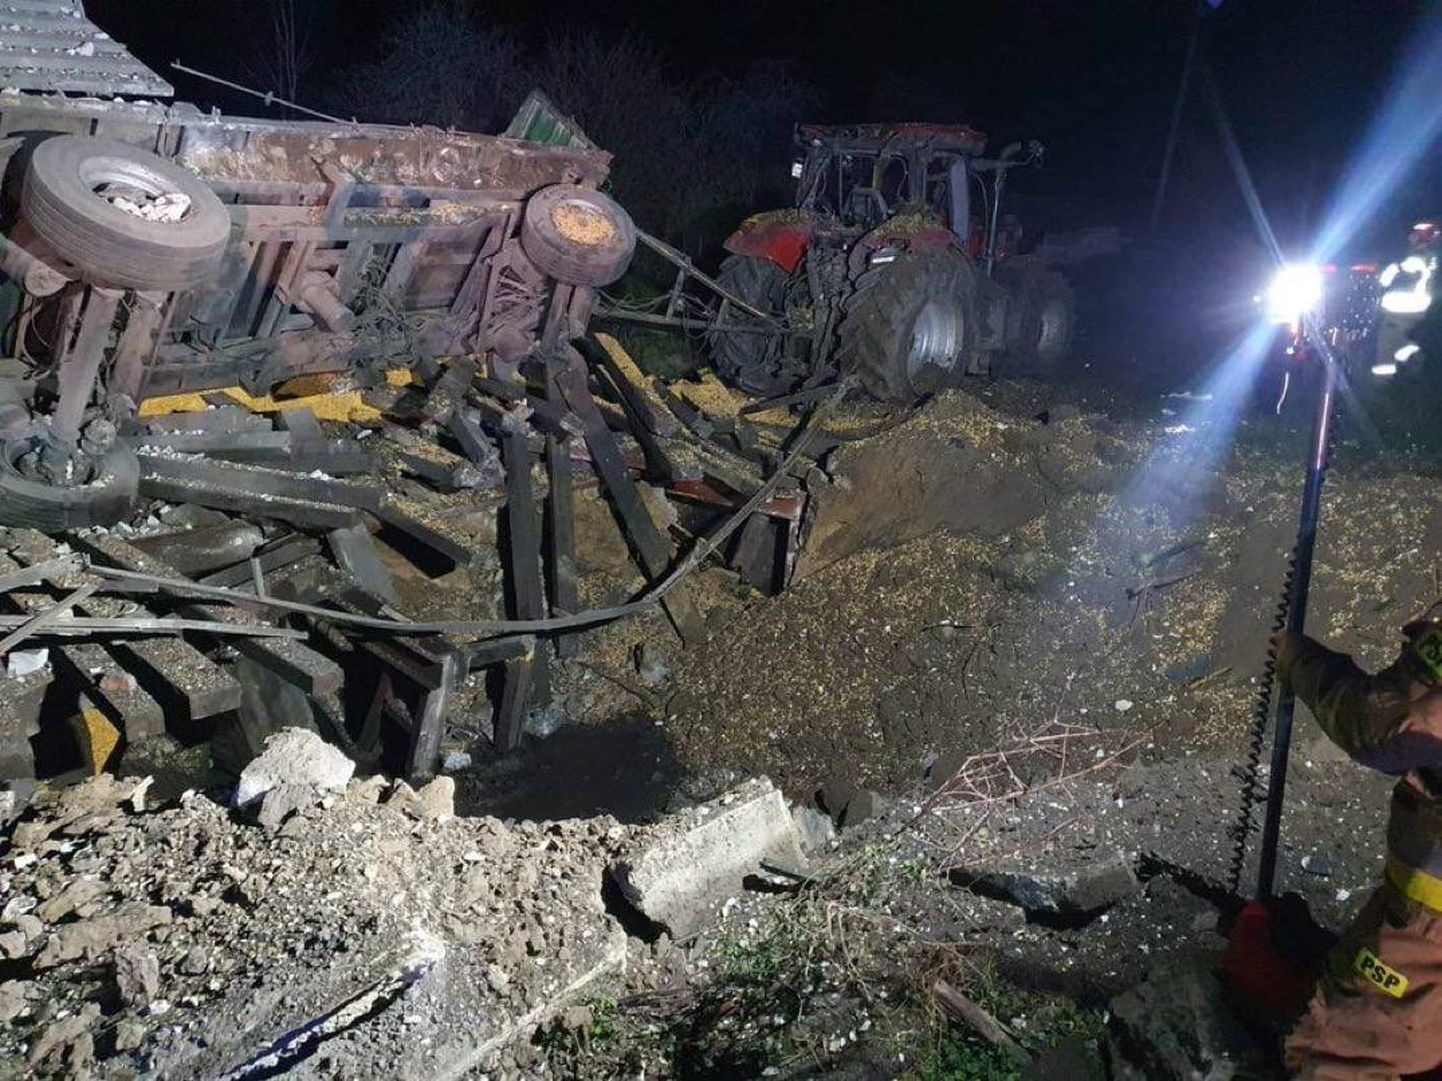 Результат прилета ракеты в польское село Пшеводув, что в 15 километрах от украинской границы. На месте погибло 2 польских фермера.